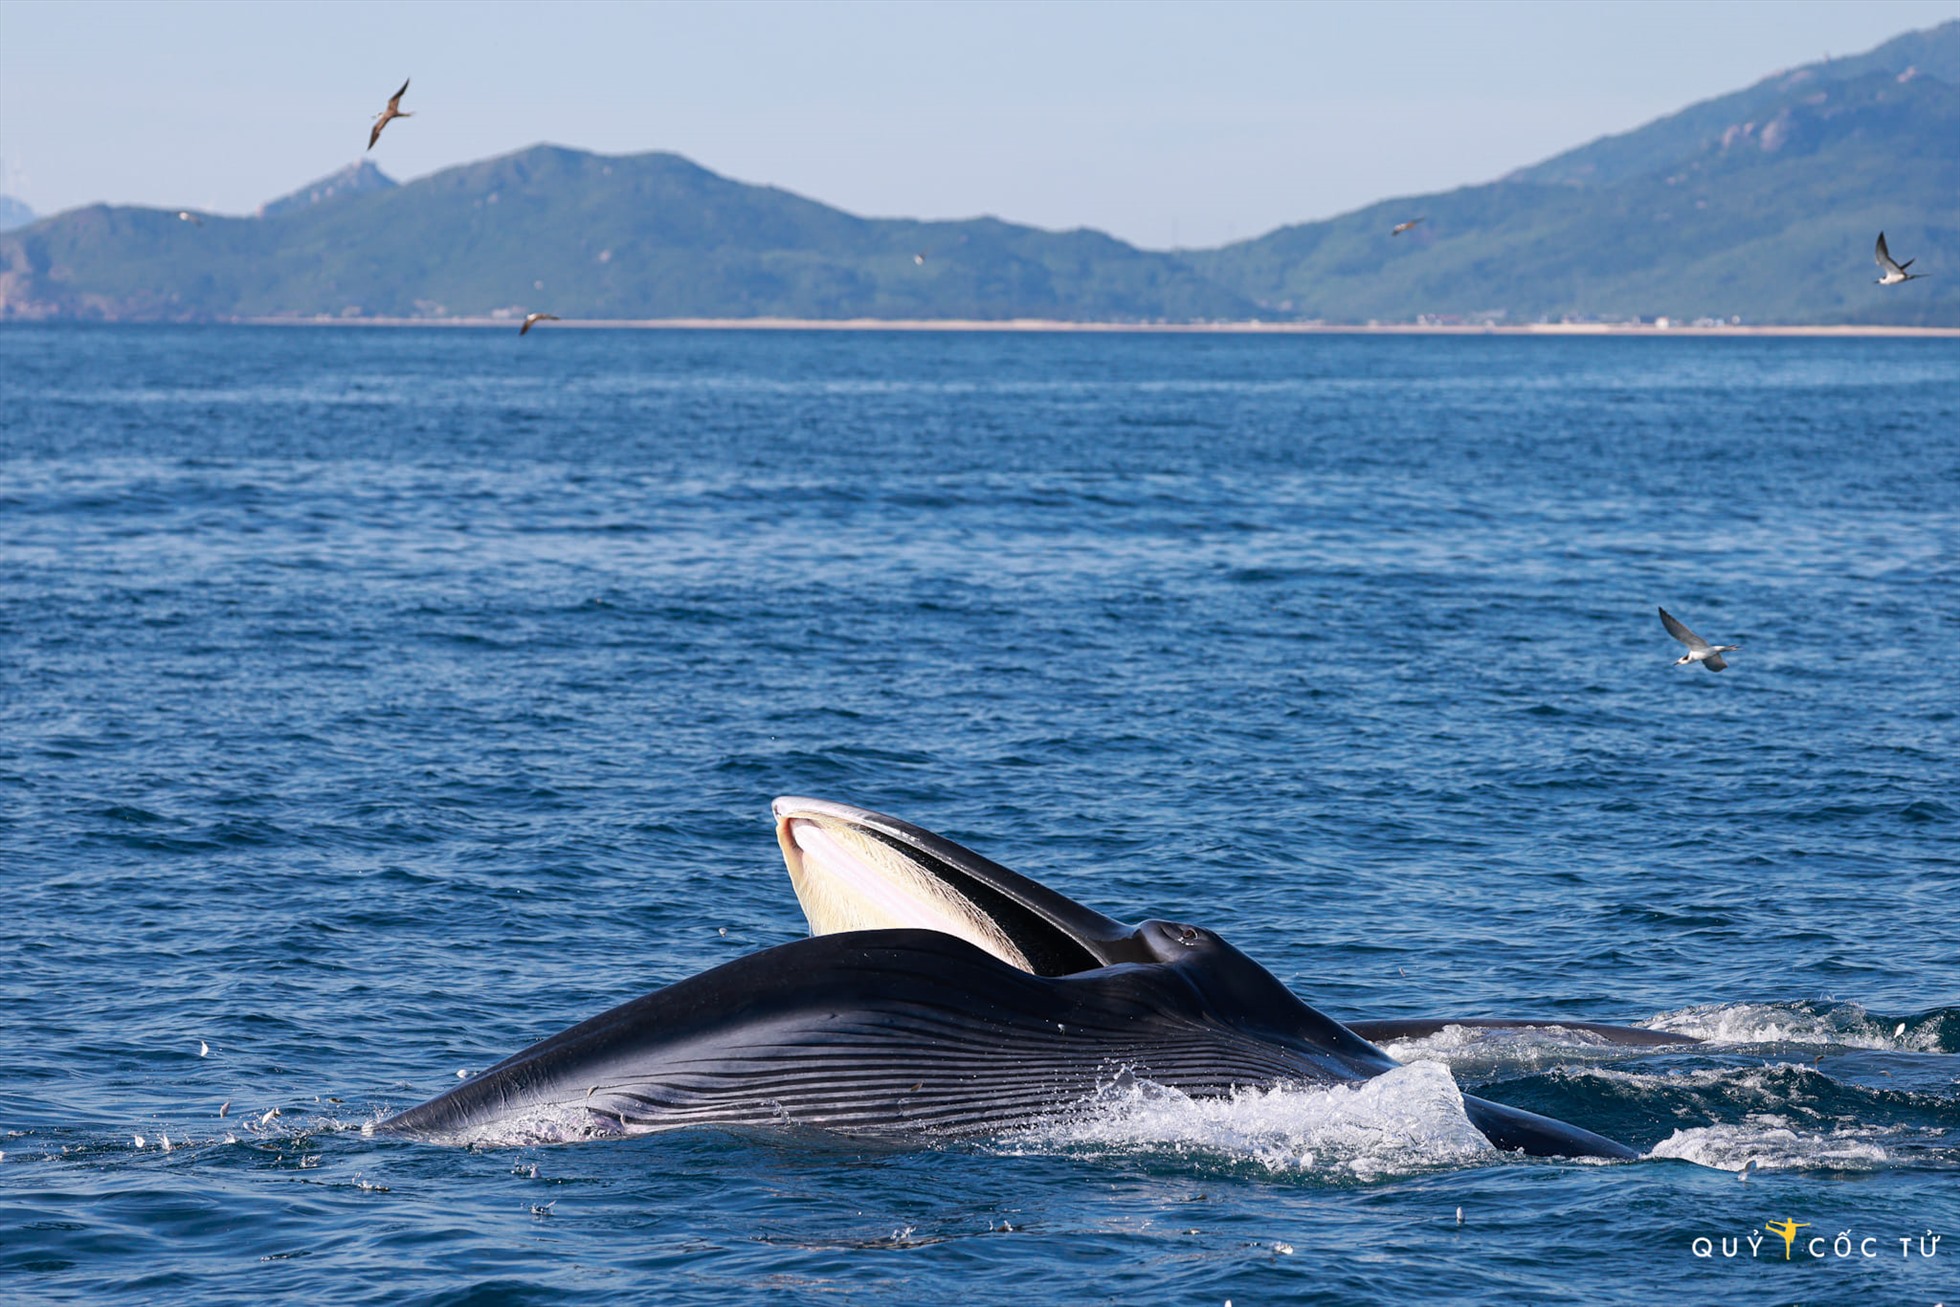 Chùm ảnh về những con cá voi xanh giữa đại dương - Tuổi Trẻ Online